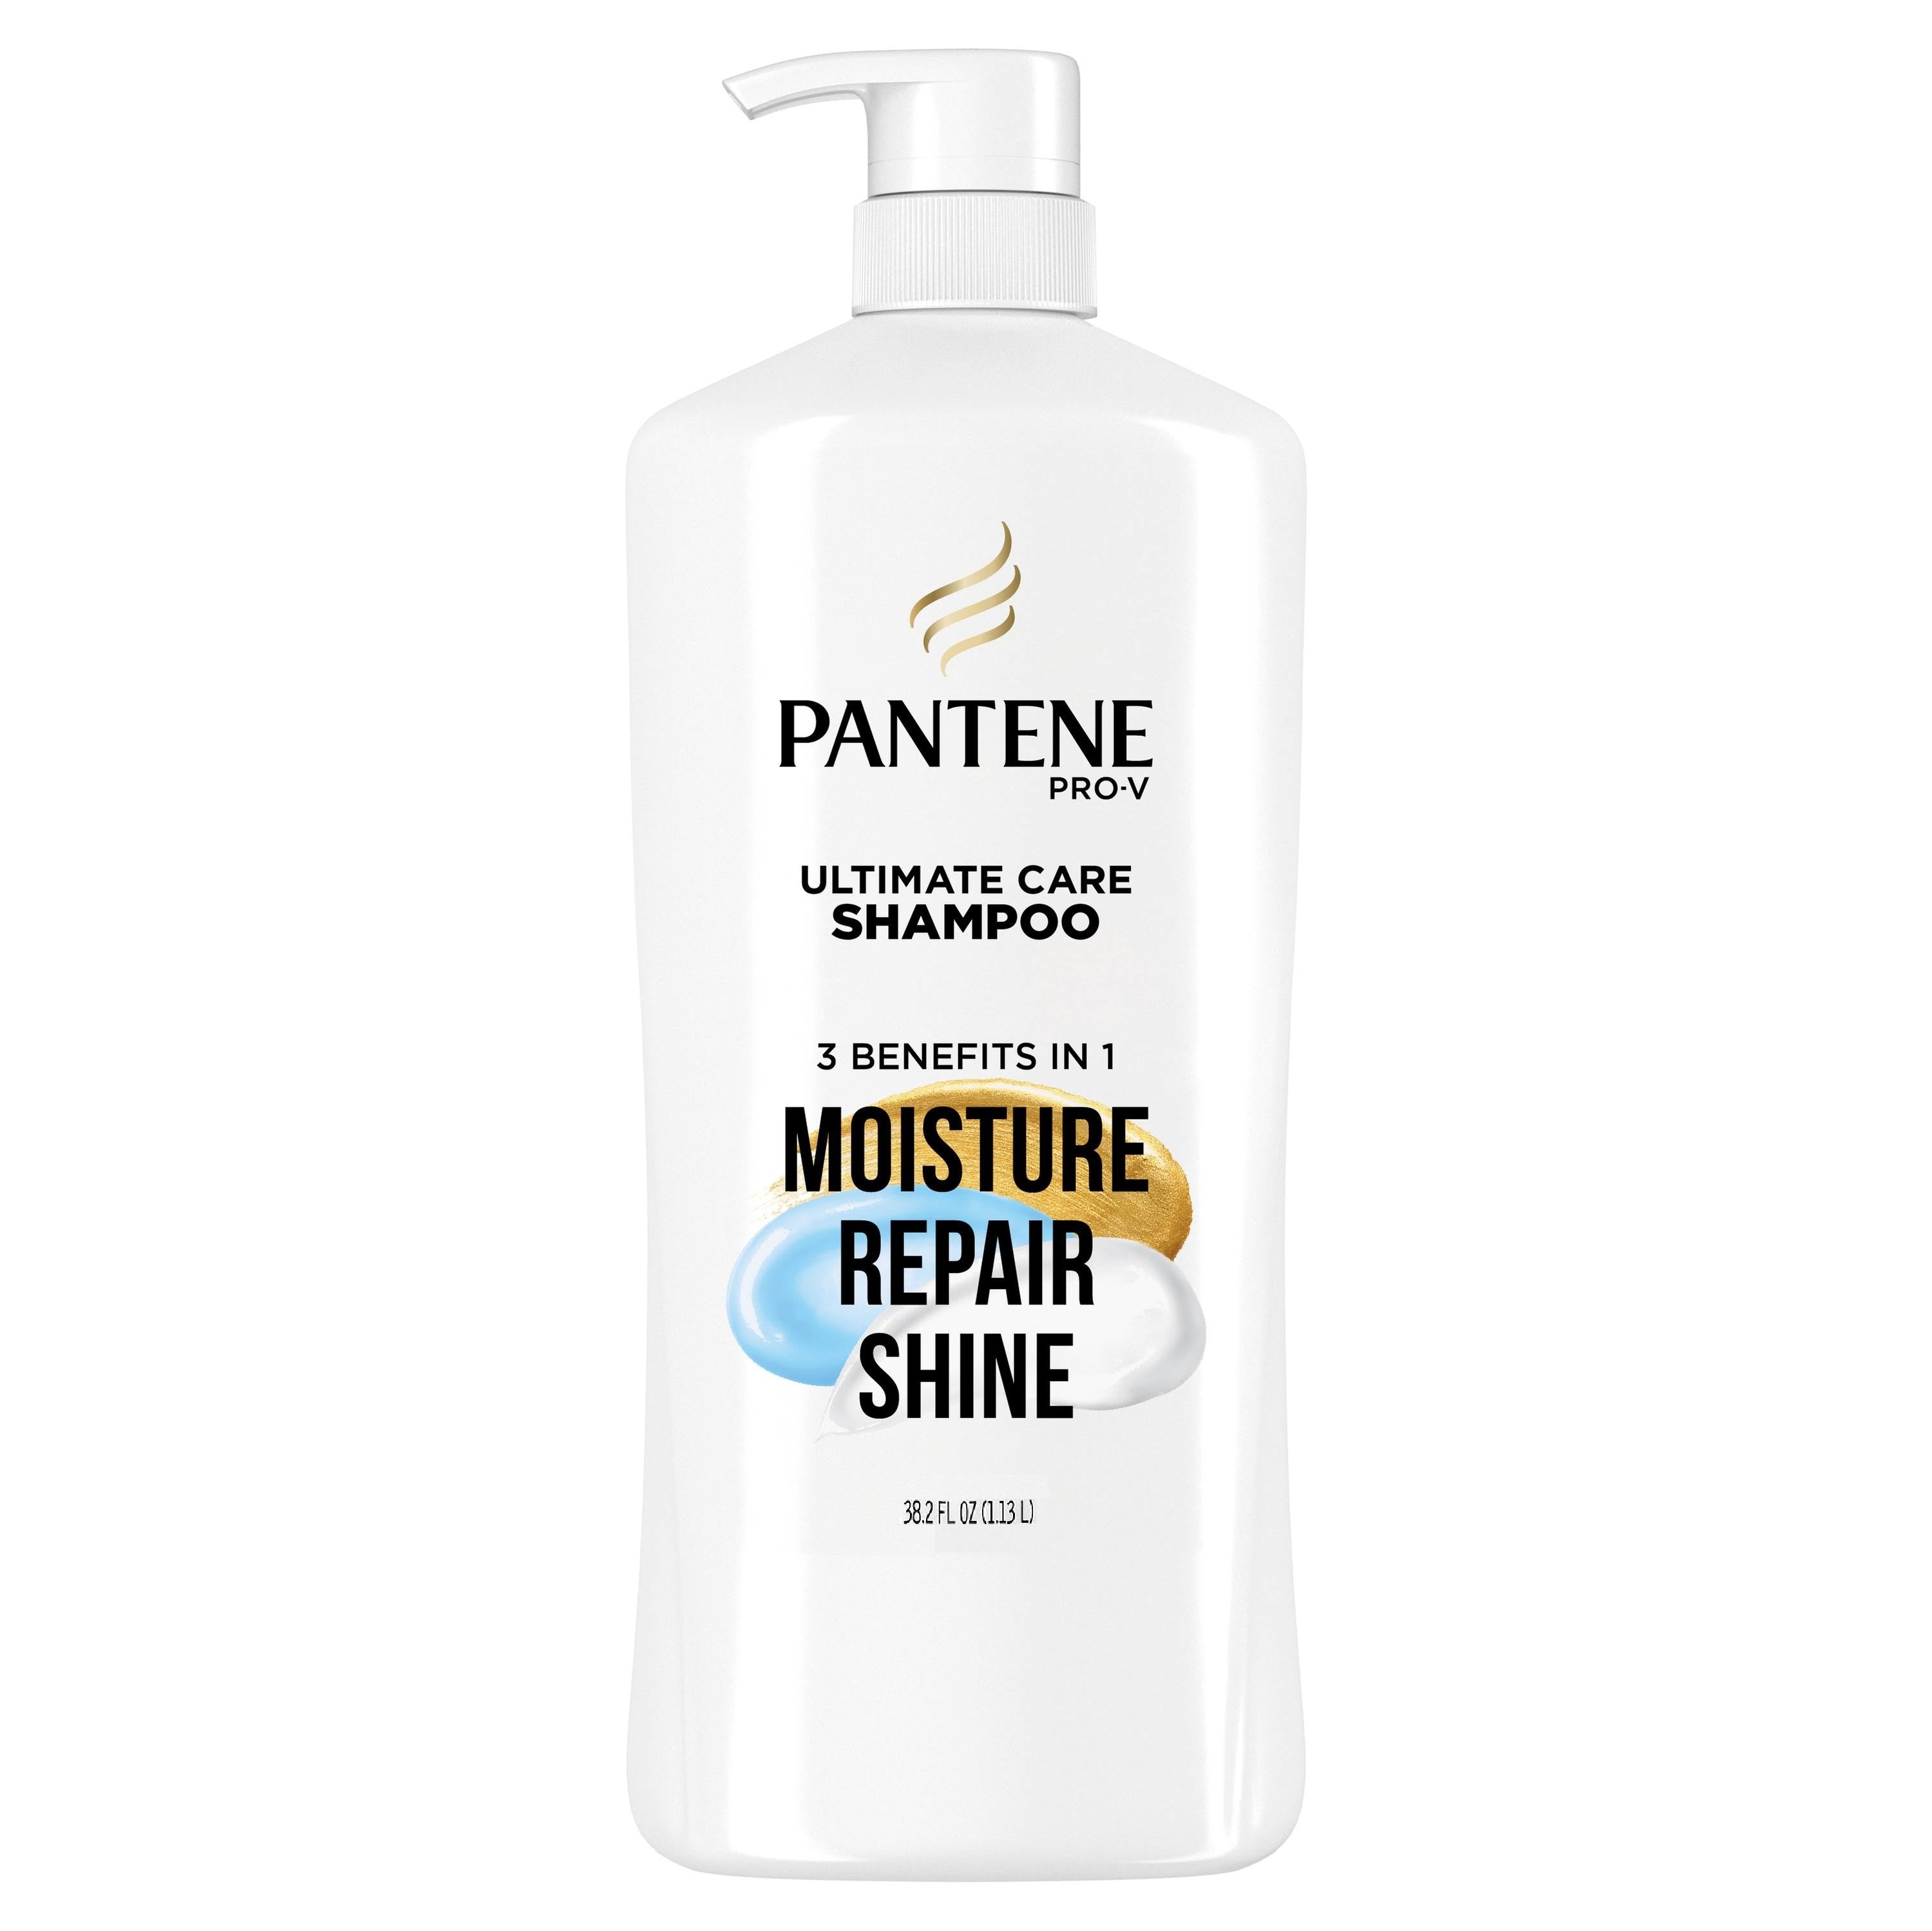 Pantene Pro-V Ultimate Care Moisture + Repair + Shine Shampoo - 38.2oz/1pk